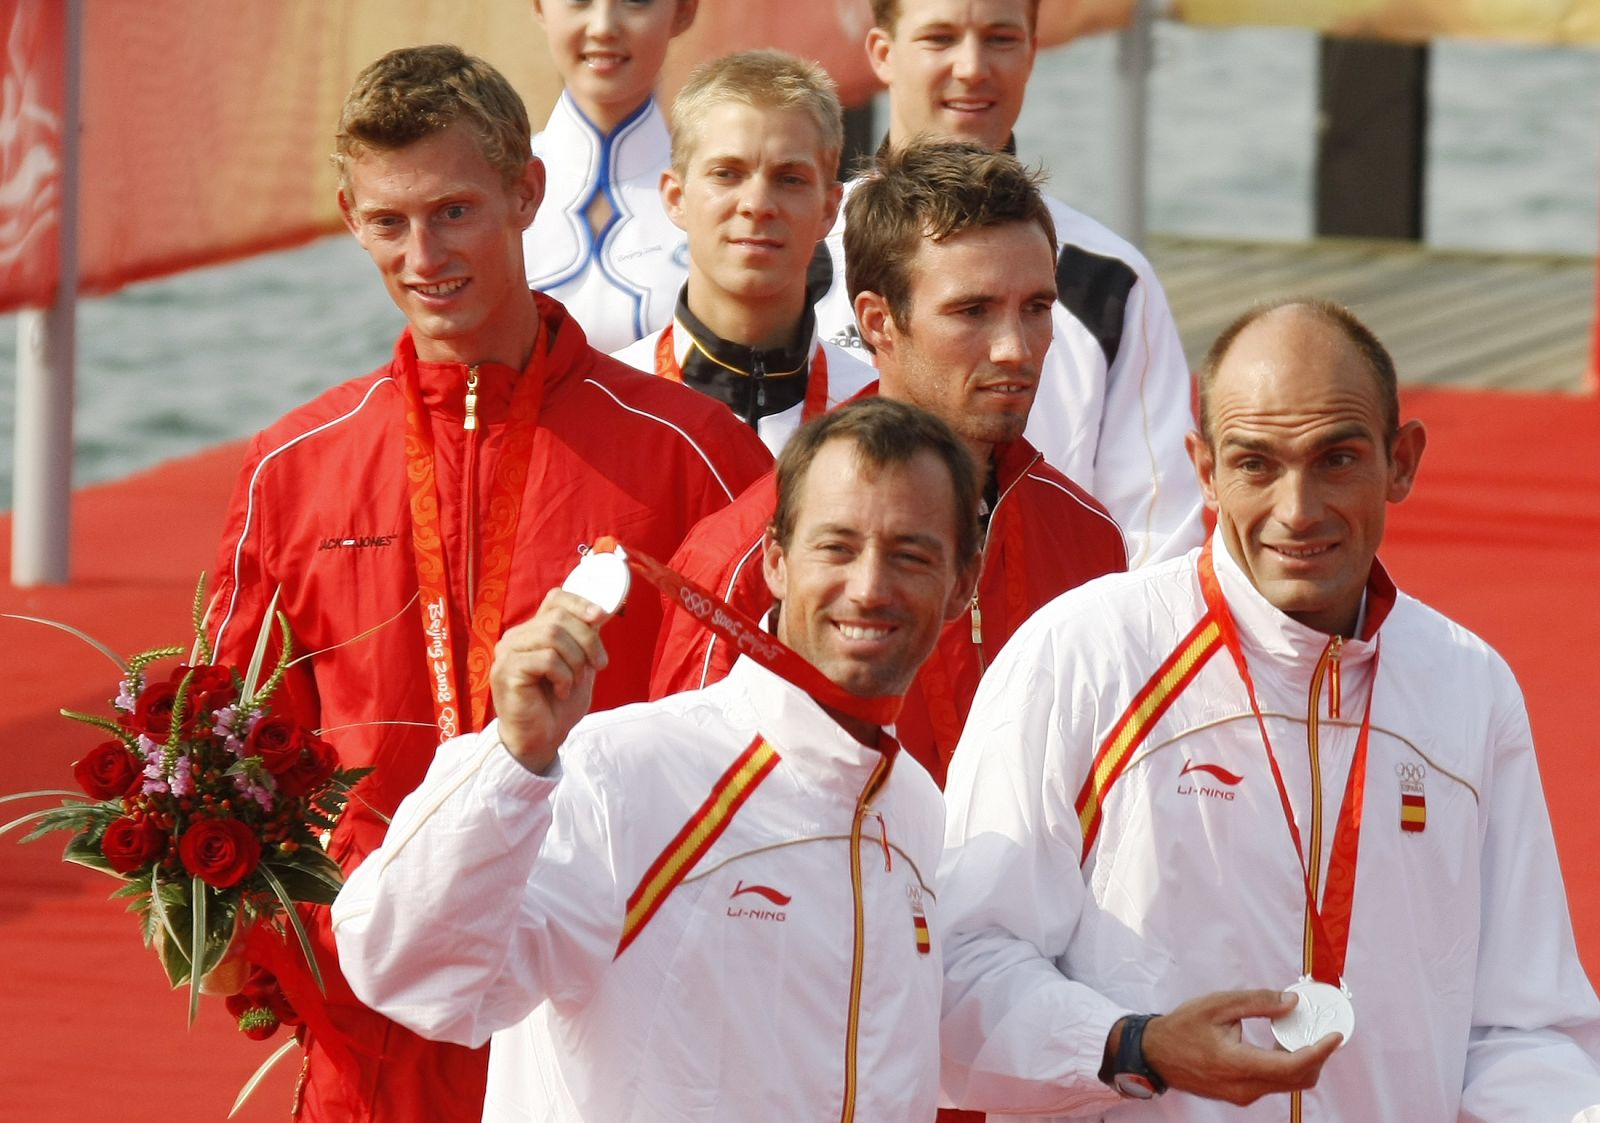 Iker Martínez y Xavi Fernández enseñan su medalla de plata en presencia de los daneses.